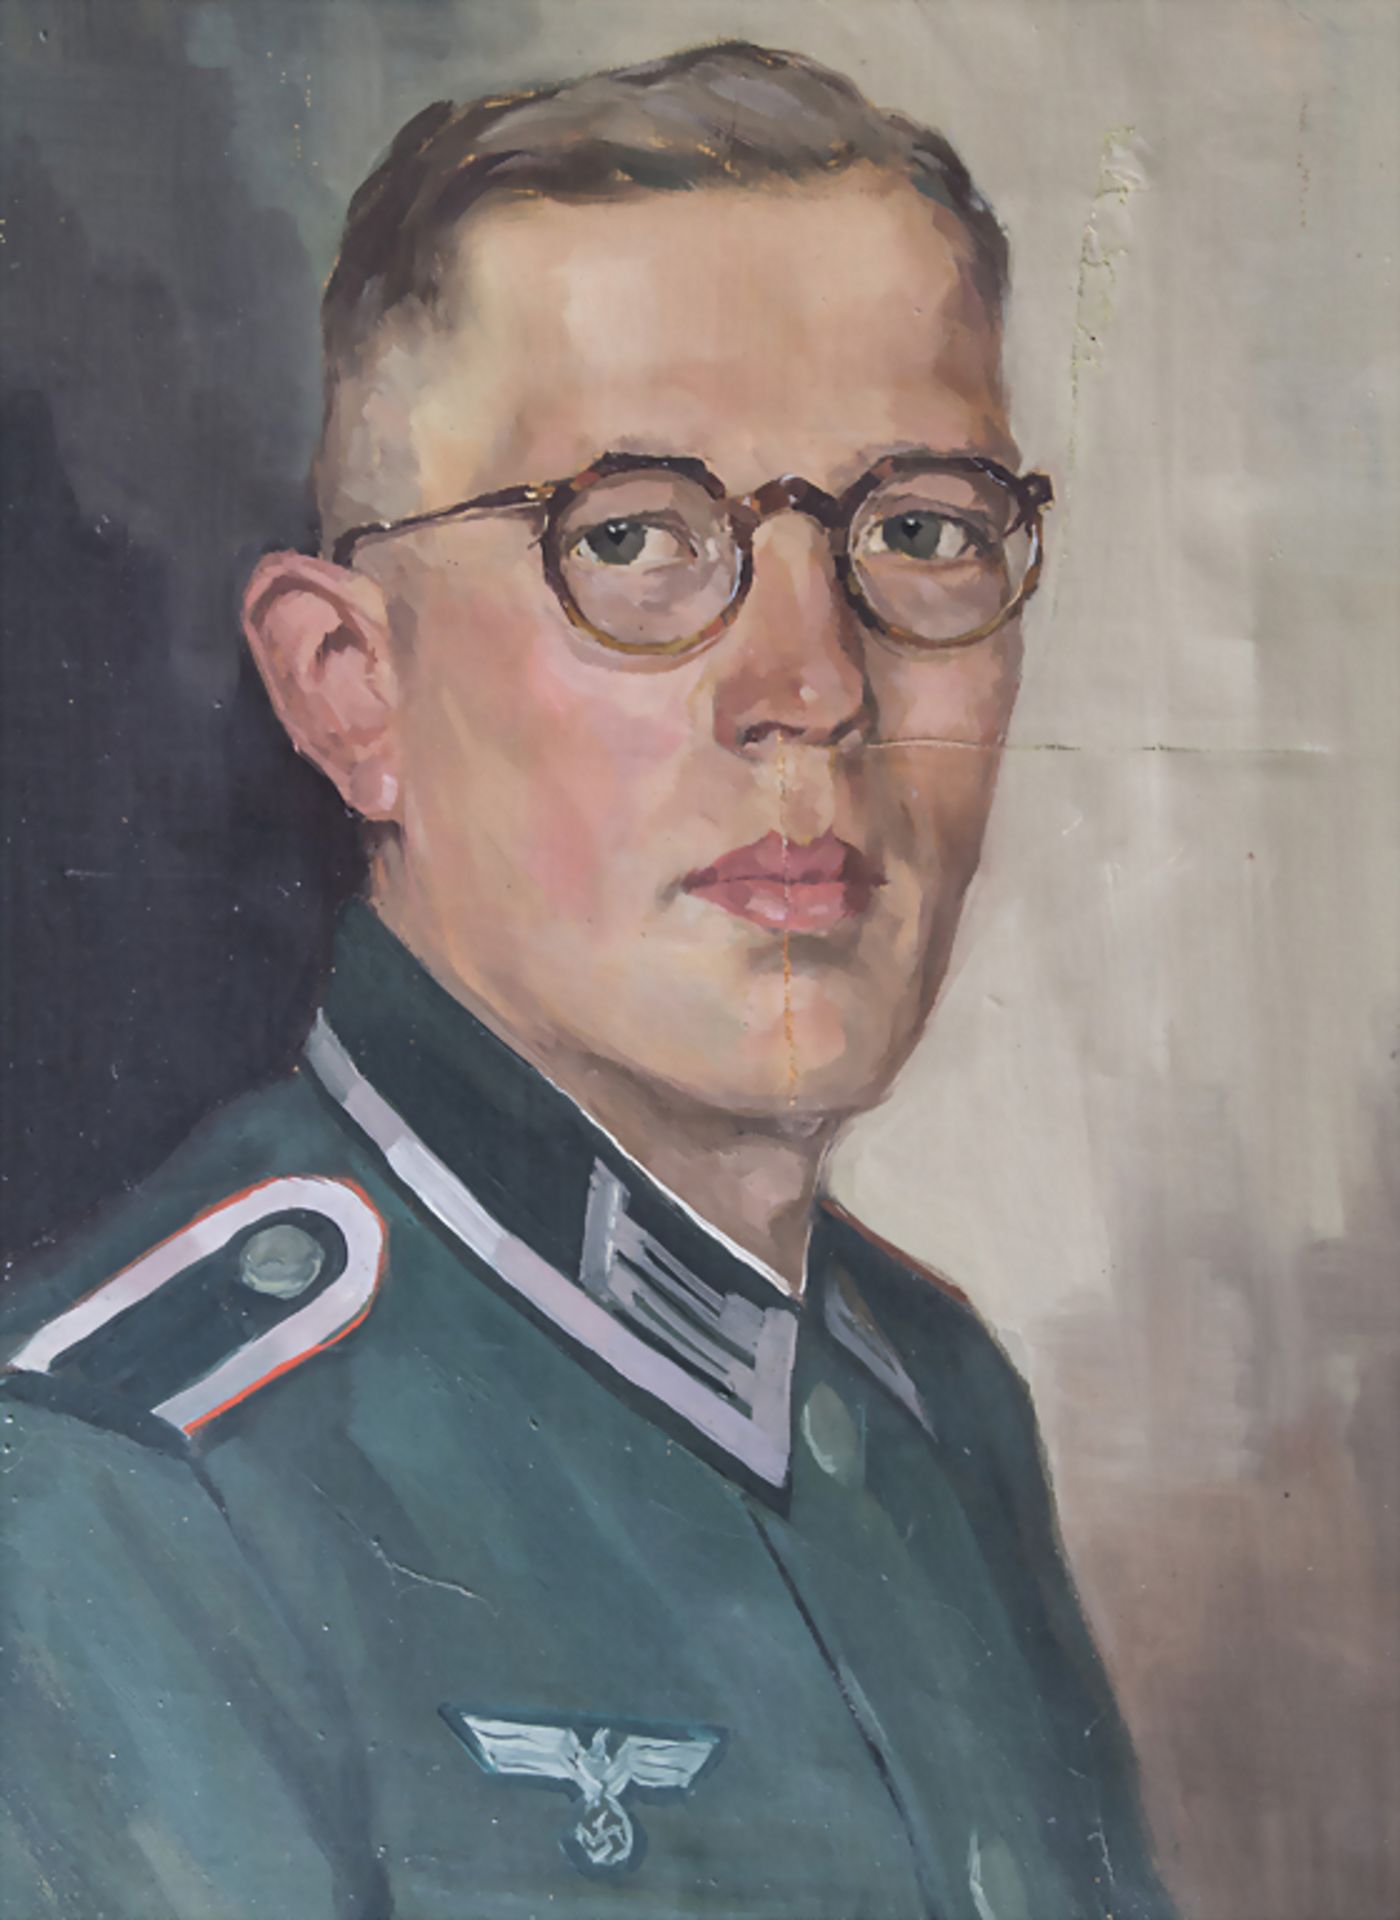 Künstler der 1930/40er Jahre, 'Soldat des 3. Reiches' / 'Soldier of the Third Reich'T